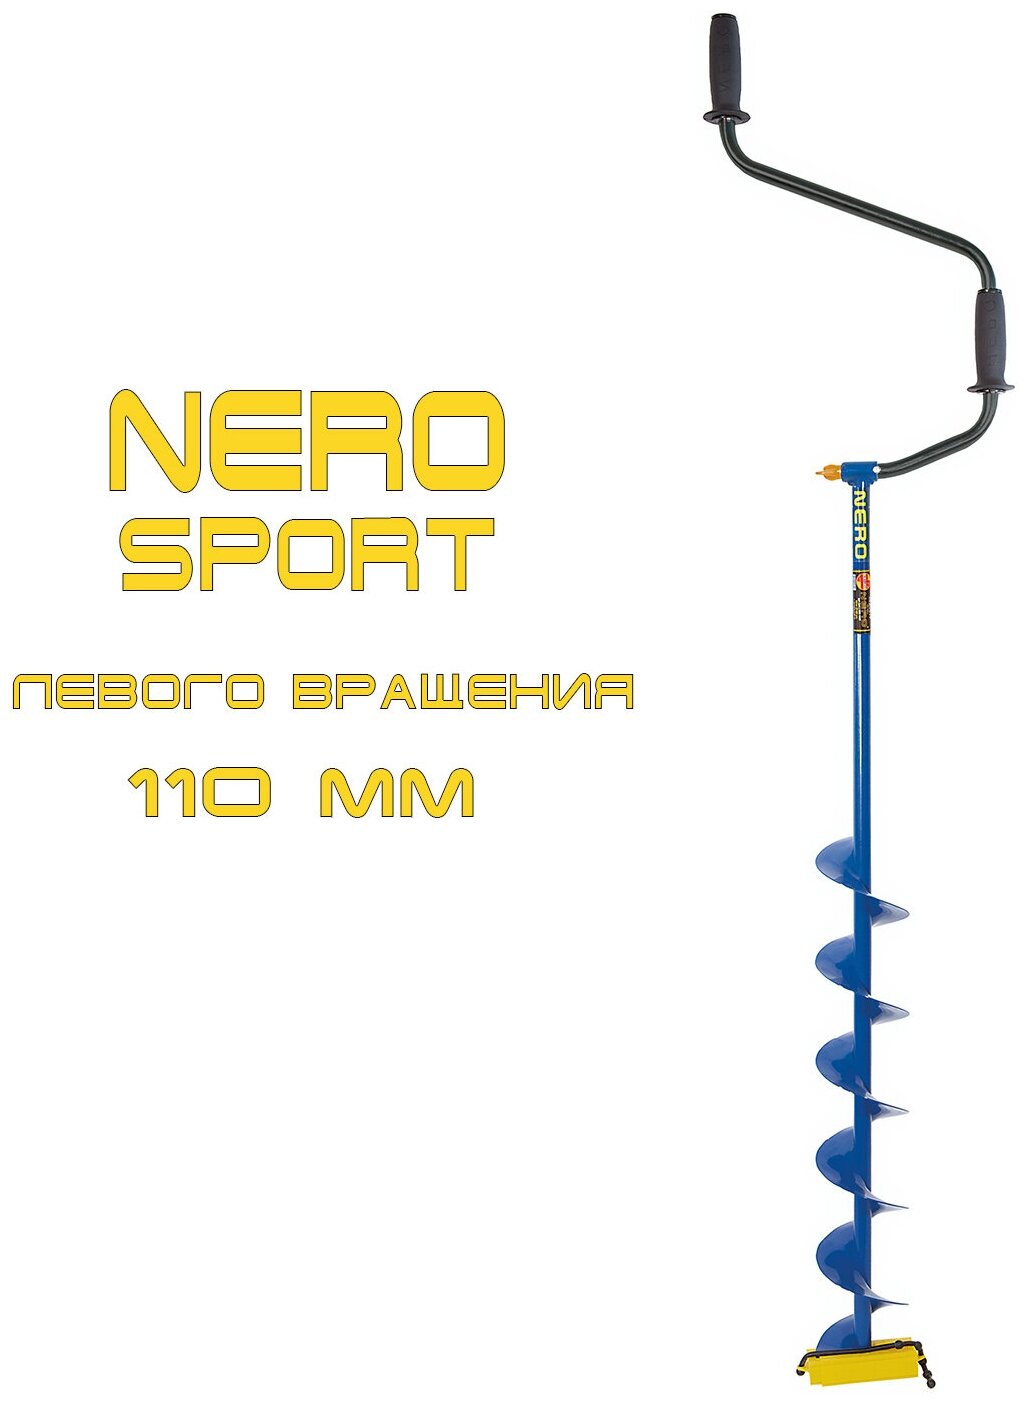 Ледобур Nero SPORT 110-1 Lшнека-0.62м Lтранс.-1.12м Lрабочая-1.65м m-2.3кг